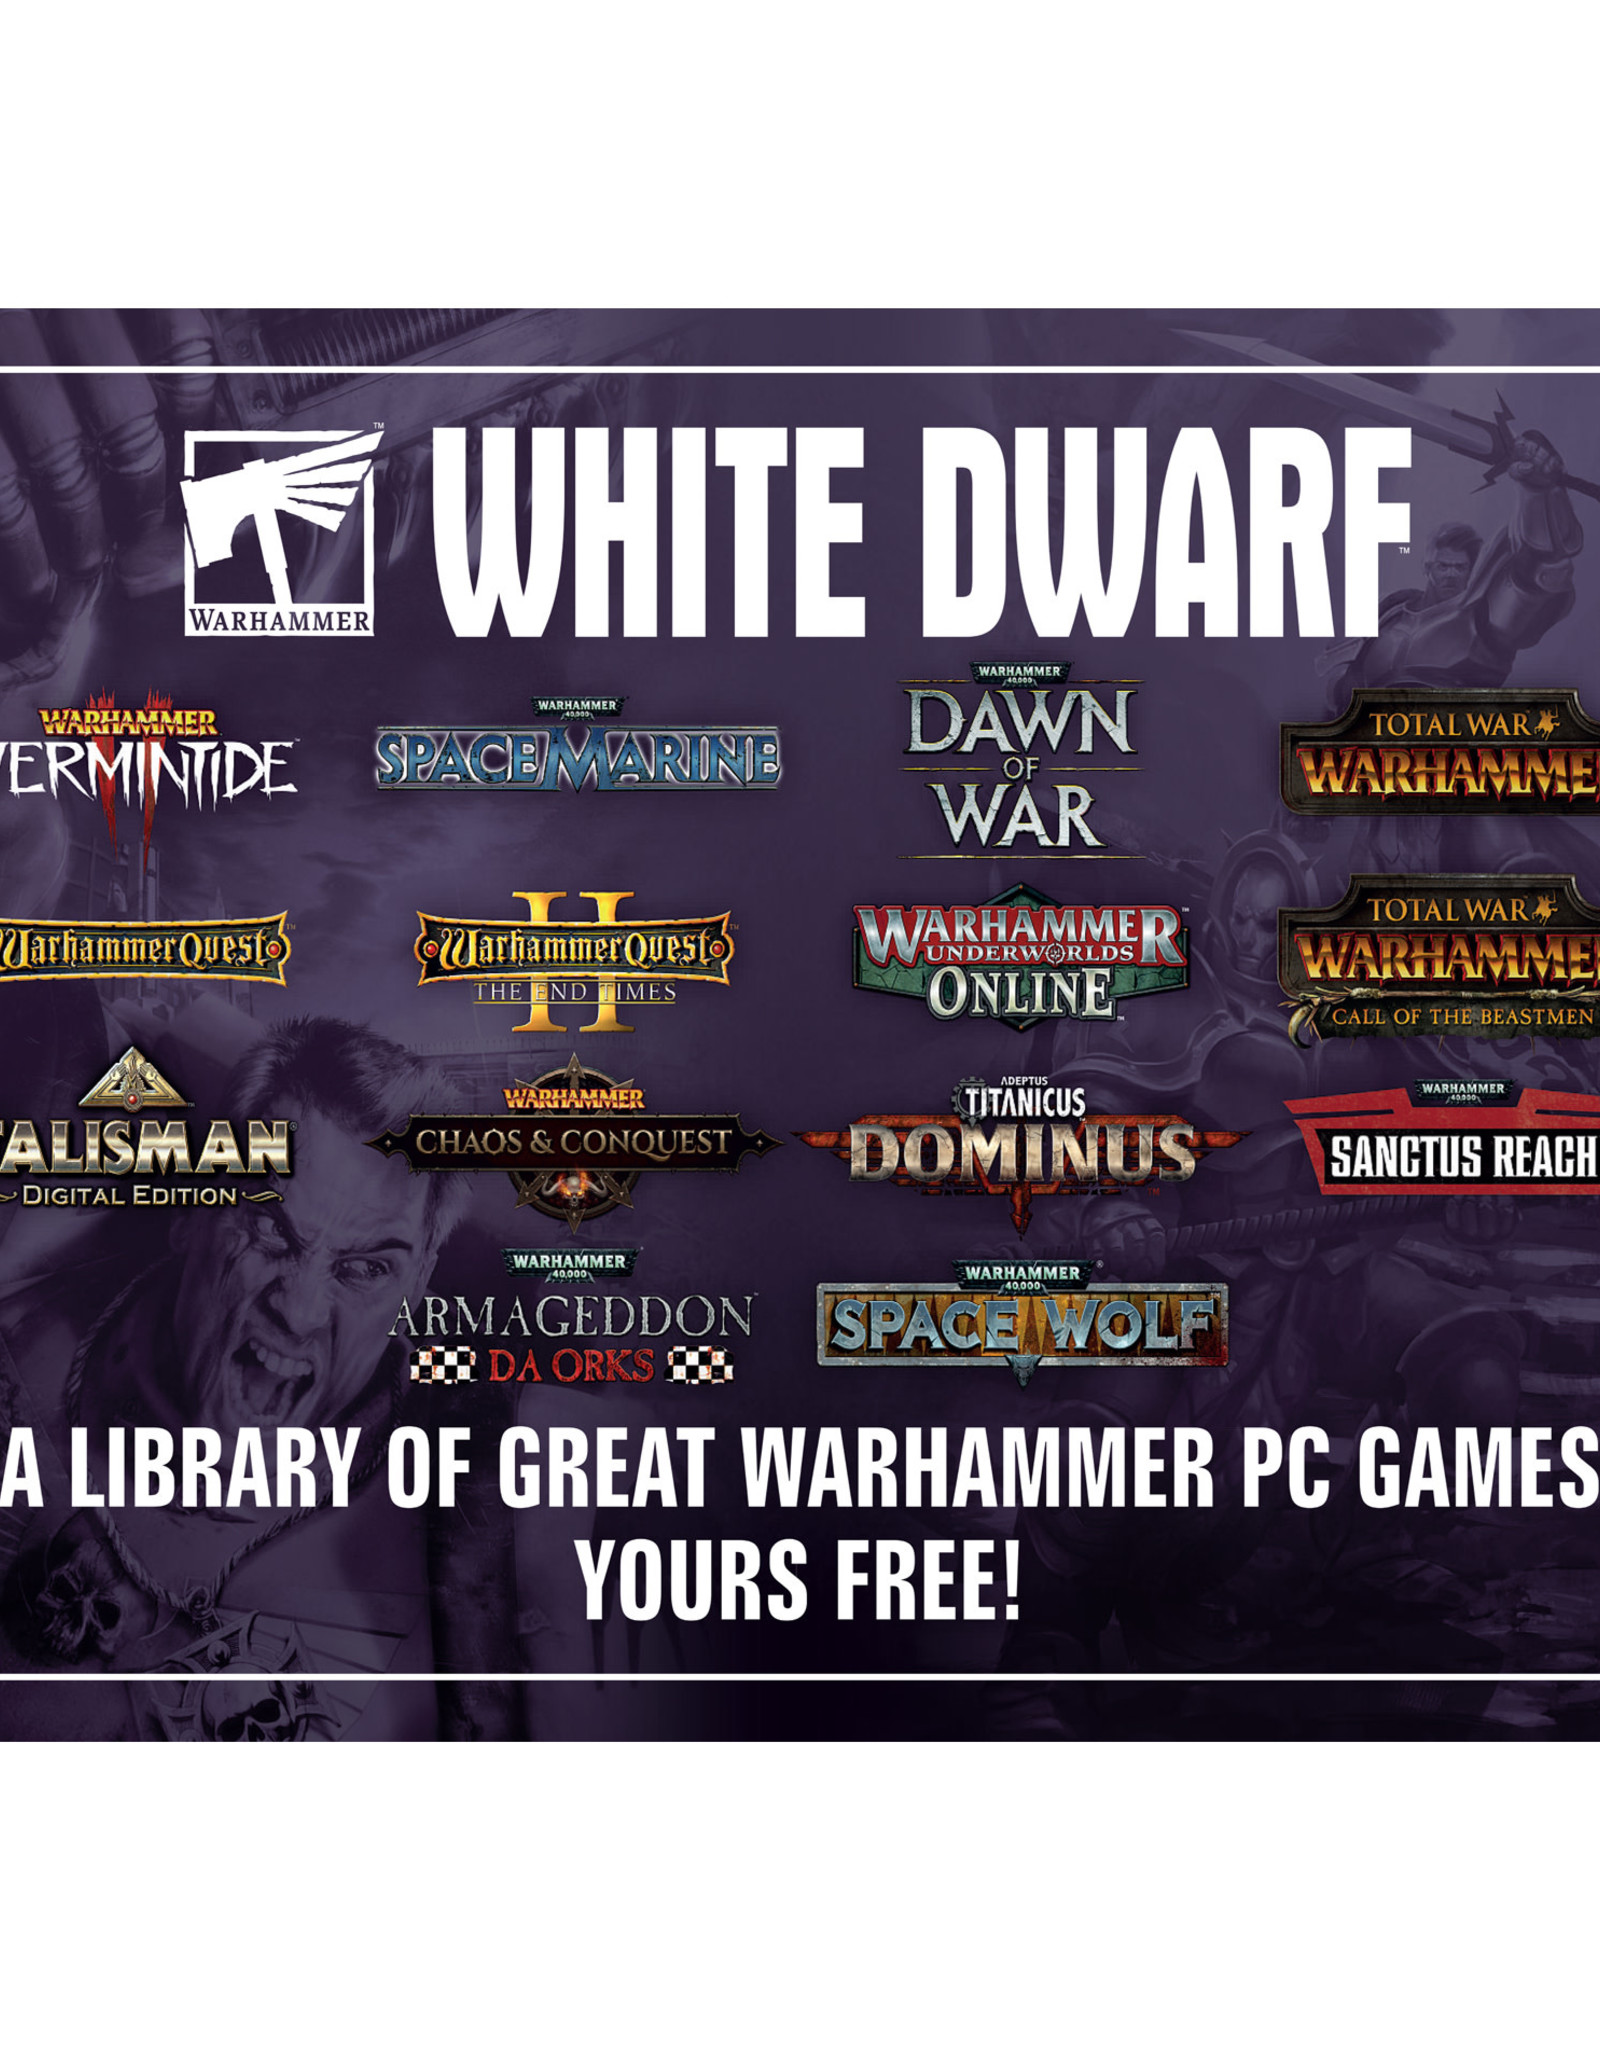 Games Workshop White Dwarf Magazine #462